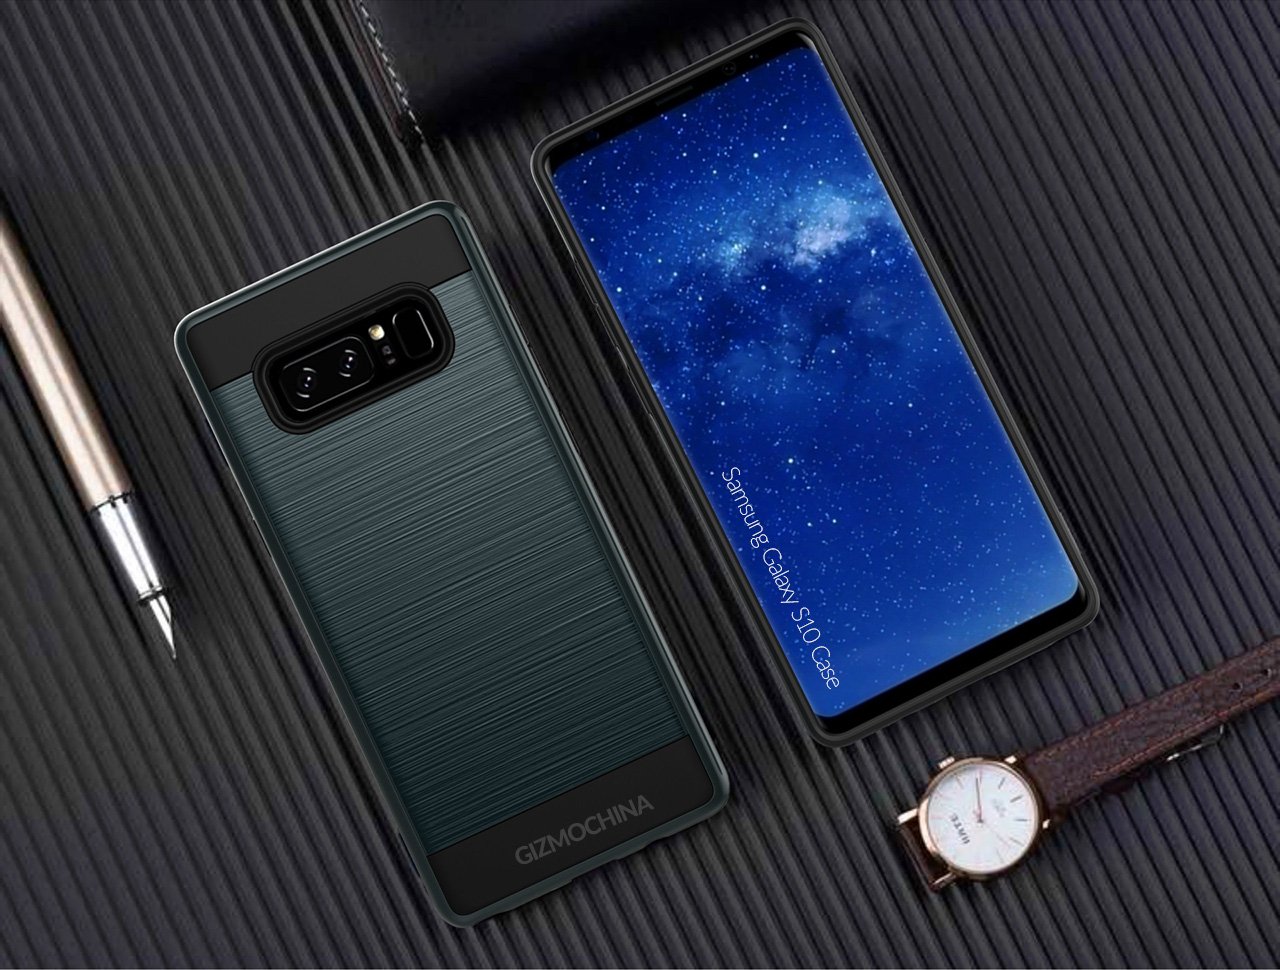 👀 Filtran imágenes de las fundas del Samsung Galaxy S10 y revelan su diseño [+Video]